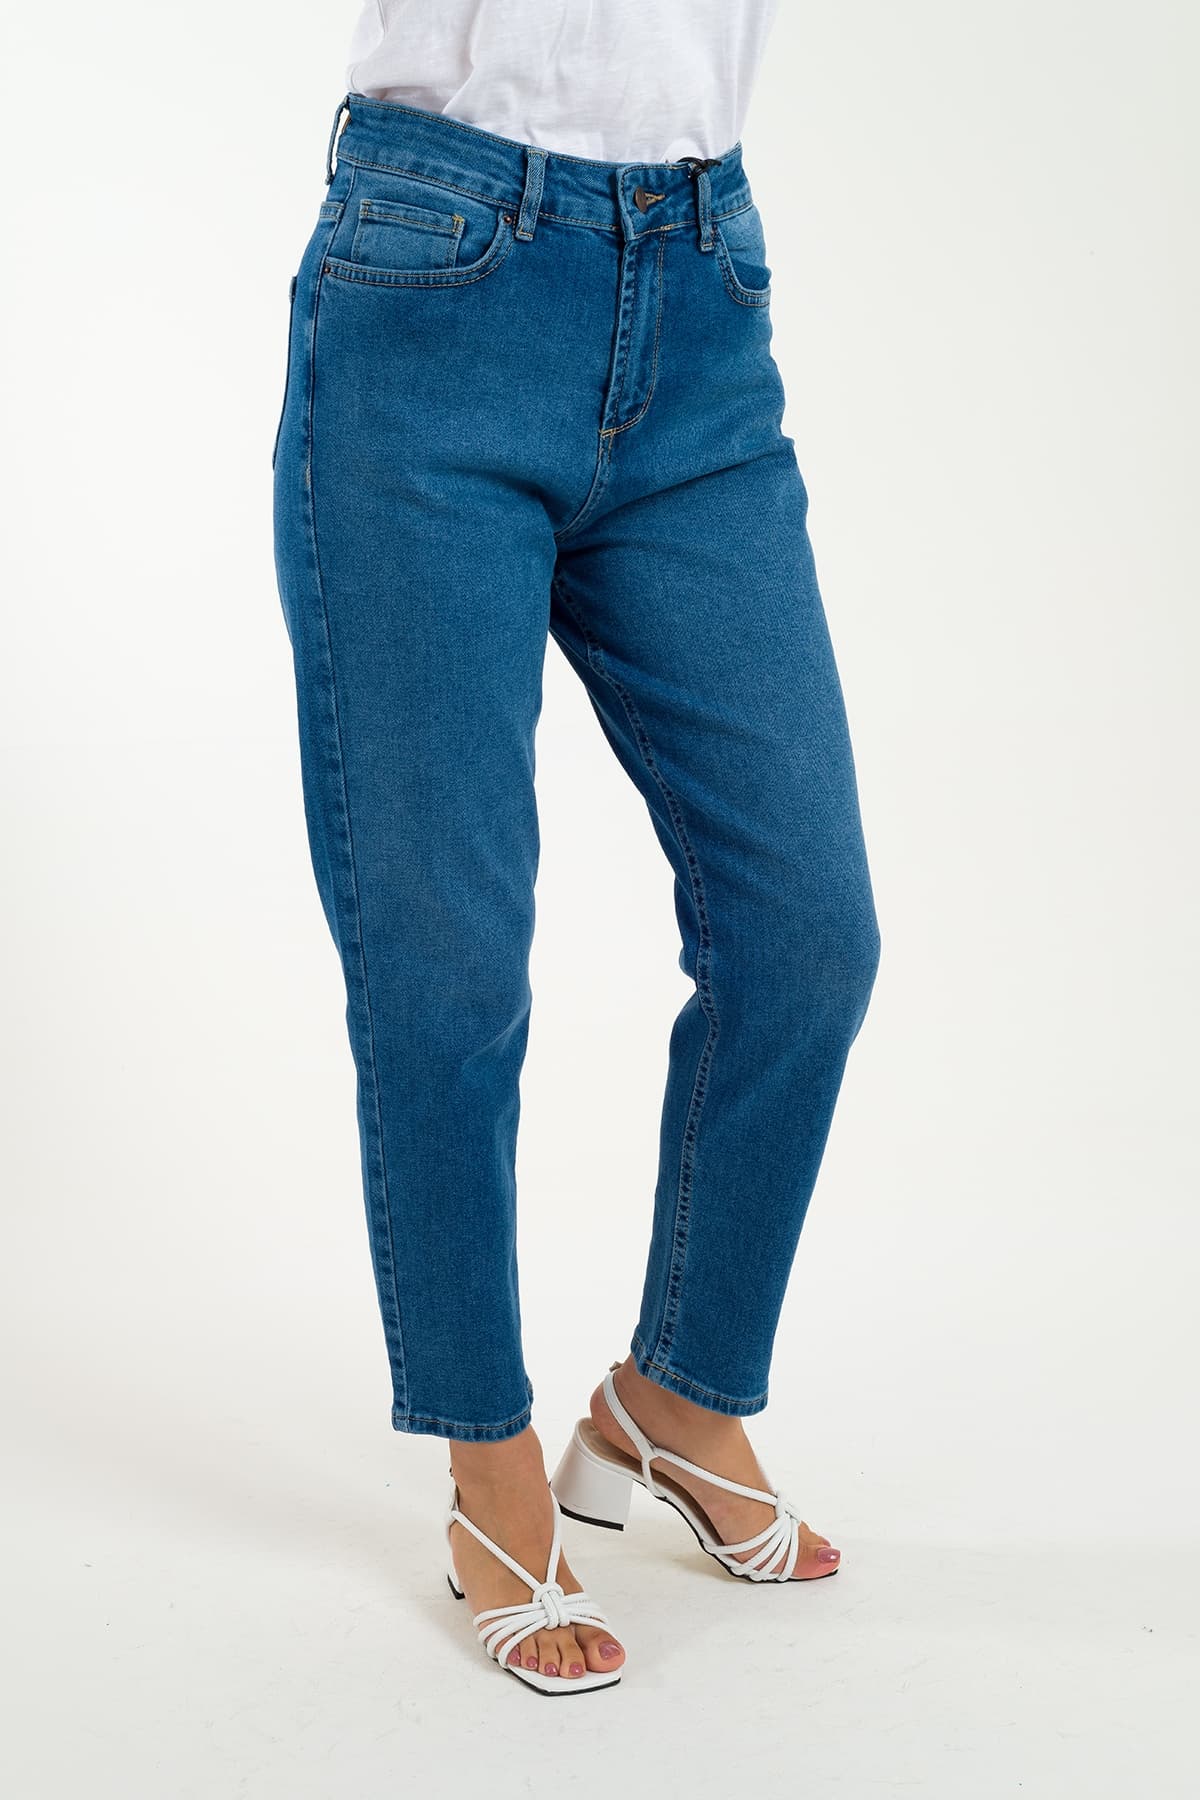 Desperado 320 Düz Model Mom Jeans Kadın Kot Pantolon